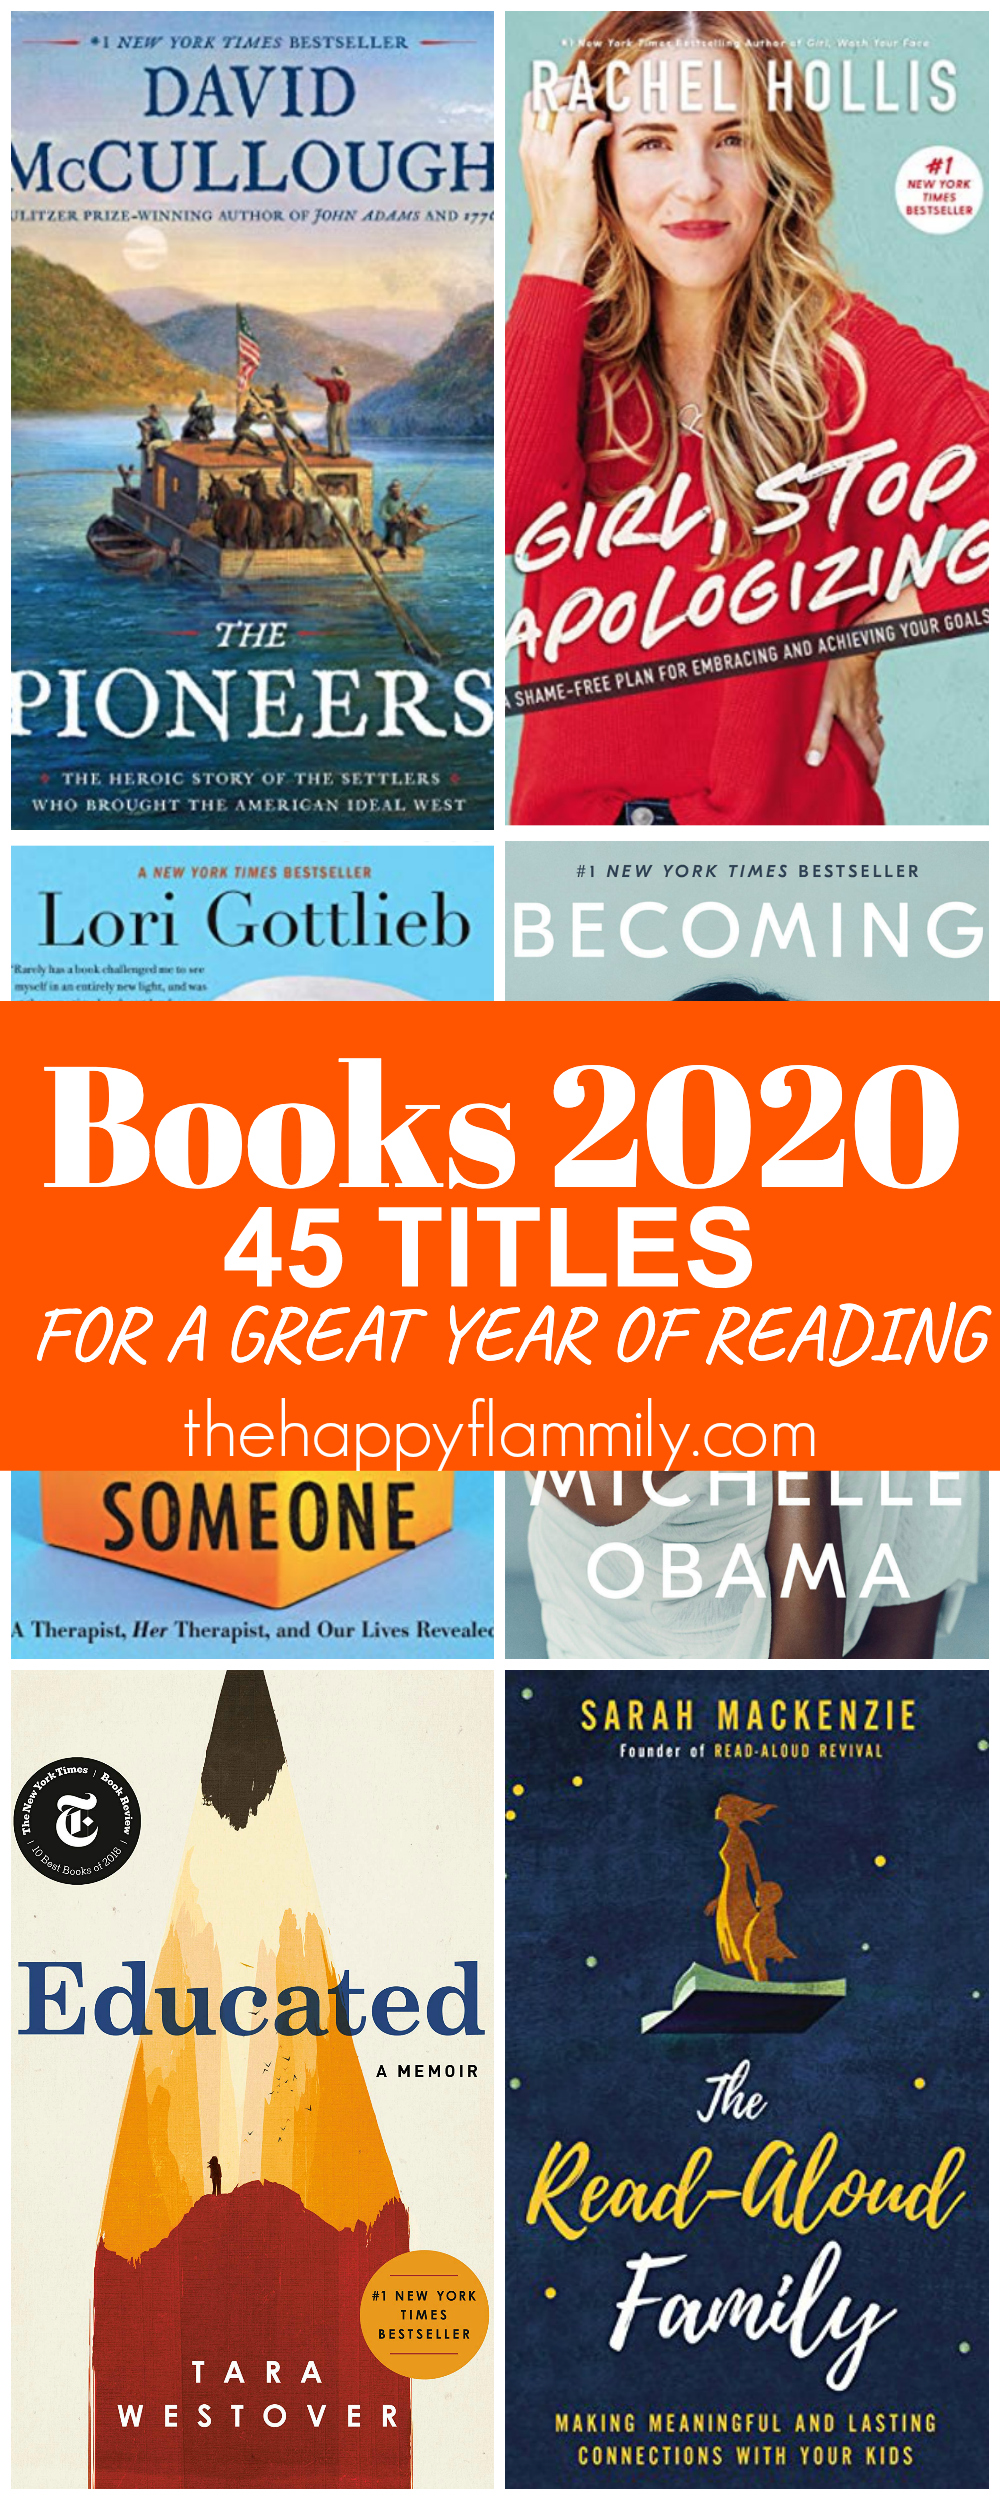 Books to read in 2020. The best books to read in 2020. The best nonfiction books. Nonfiction books to read in 2020. Booklist for 2020. The best books in 2020. Adult nonfiction book list 2020. #Books #reading #nonfiction #selfhelp